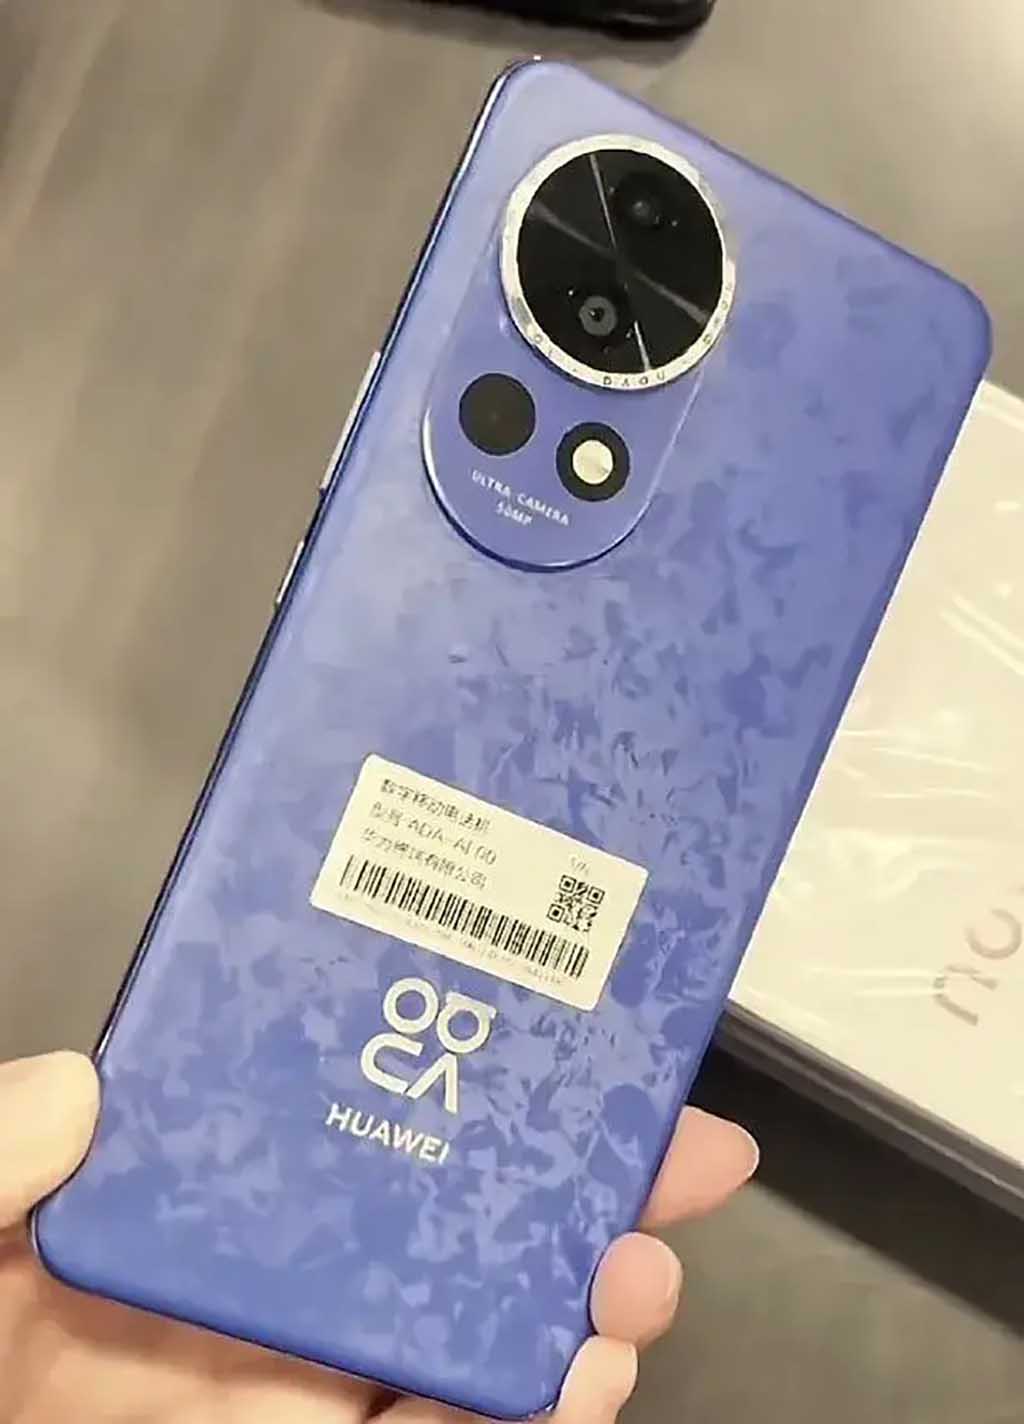 Huawei Nova 12 series price